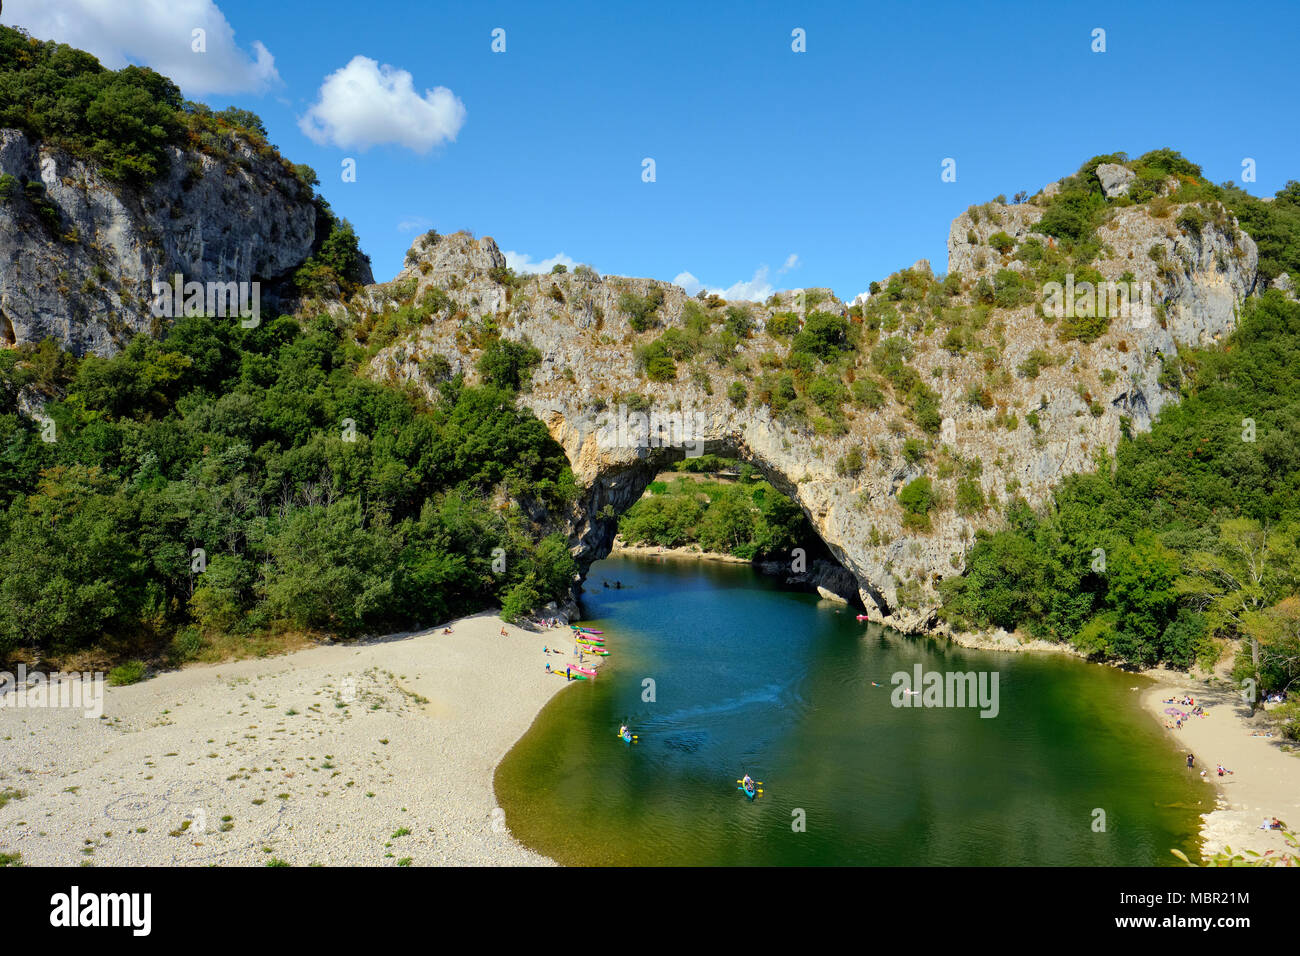 L'arche en pierre naturelle du Pont d'Arc dans les gorges de l'Ardèche, dans le sud de la France. Banque D'Images